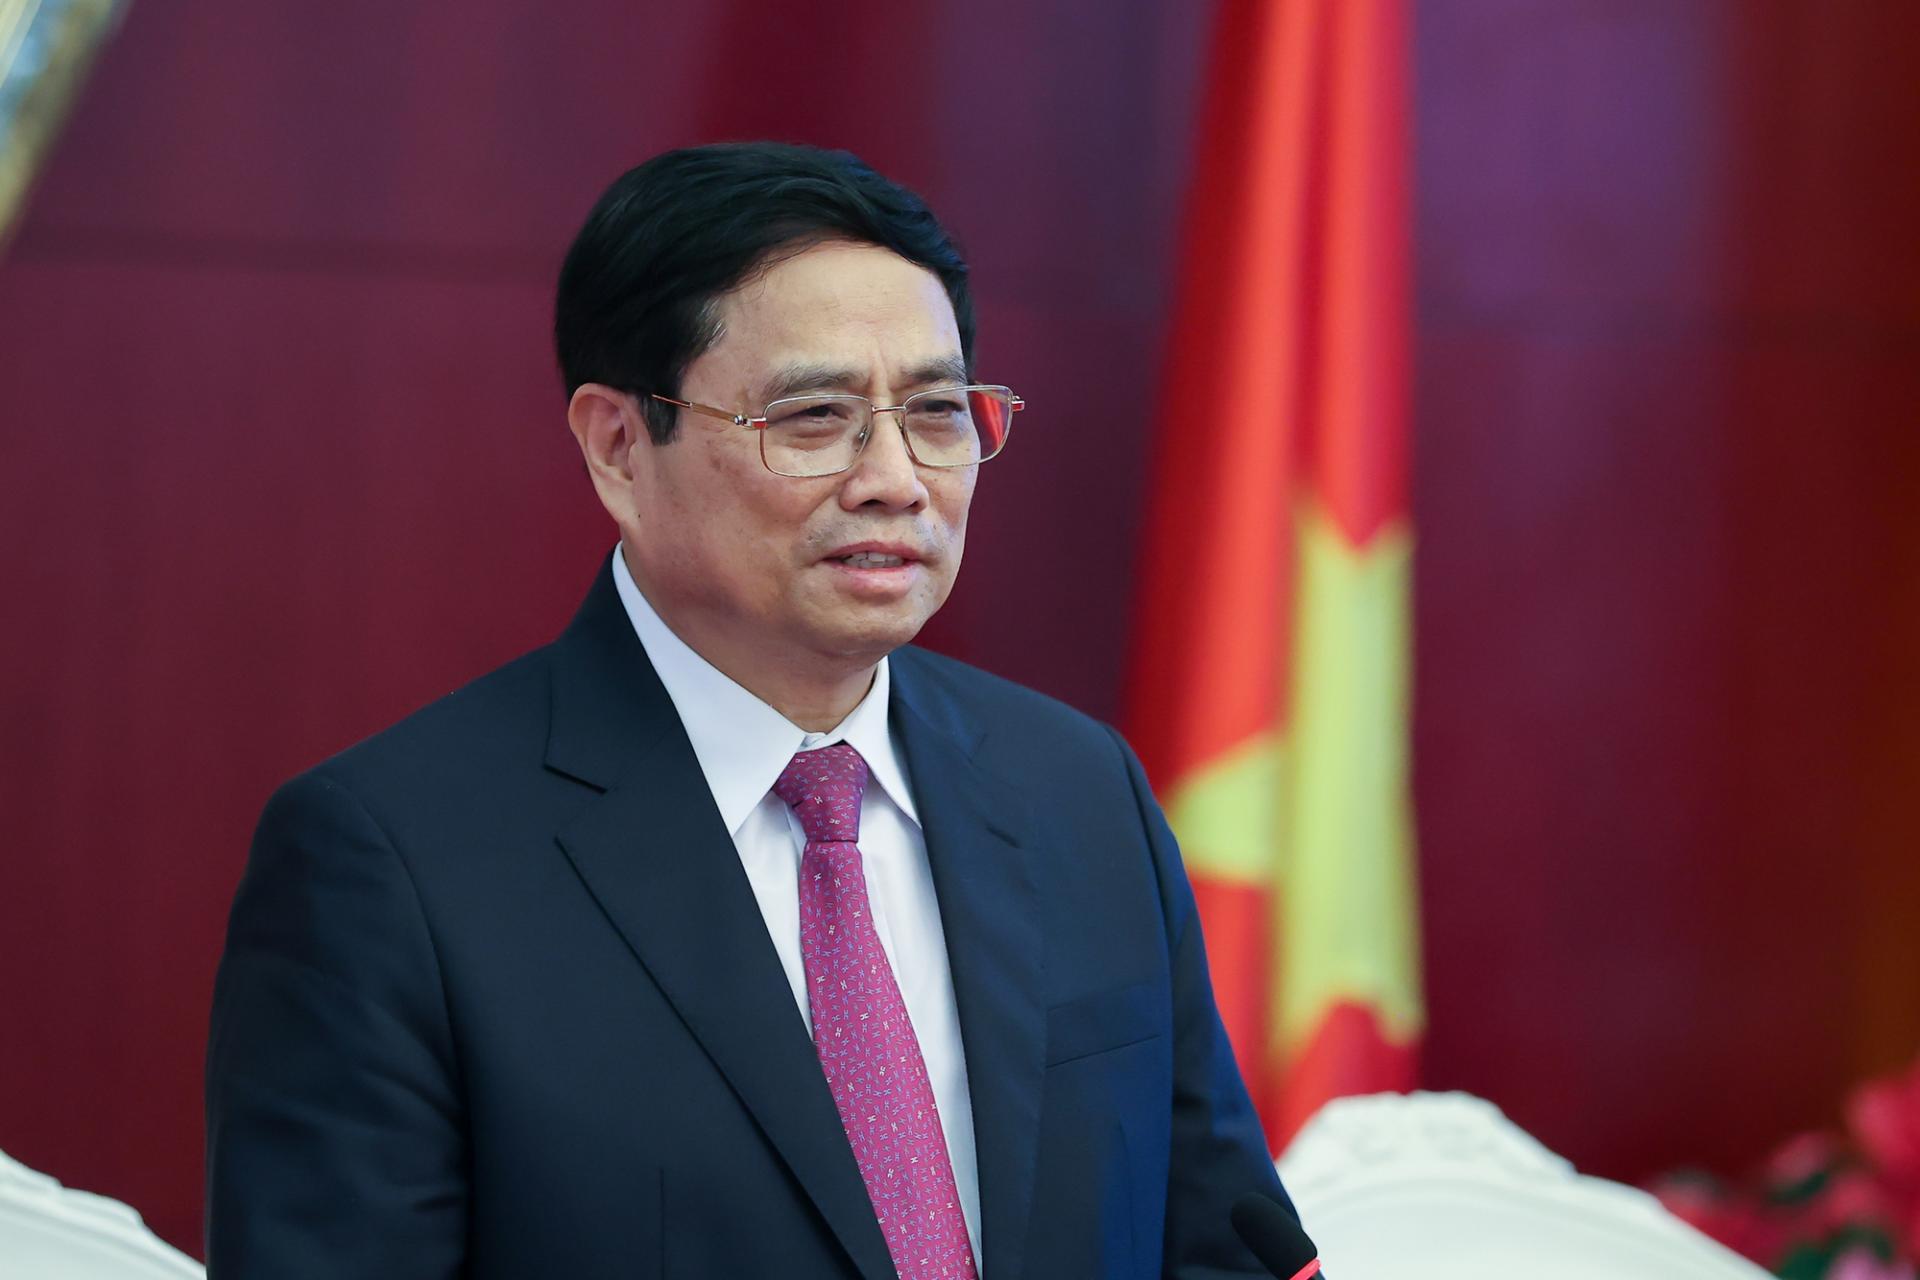 Phát biểu tại cuộc gặp mặt, Thủ tướng Phạm Minh Chính khẳng định, chủ trương nhất quán của Đảng và Nhà nước ta là luôn coi trọng duy trì và phát triển quan hệ hữu nghị, hợp tác với Đảng, Nhà nước và nhân dân Trung Quốc